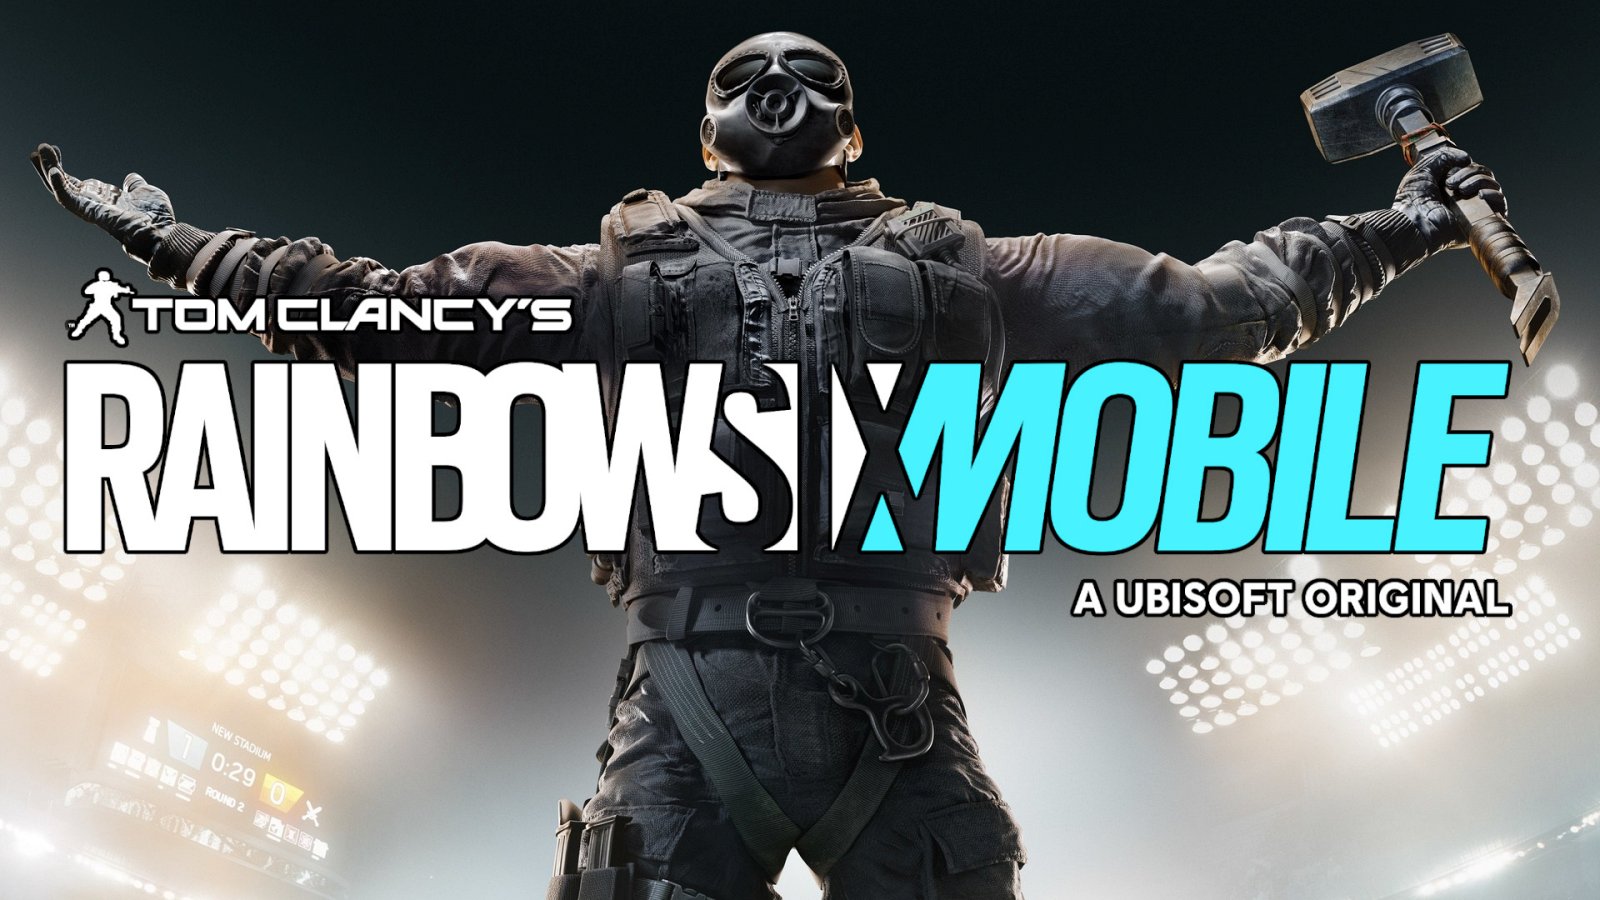 Rainbow Six Mobile: primeiras impressões sobre o novo jogo da franquia